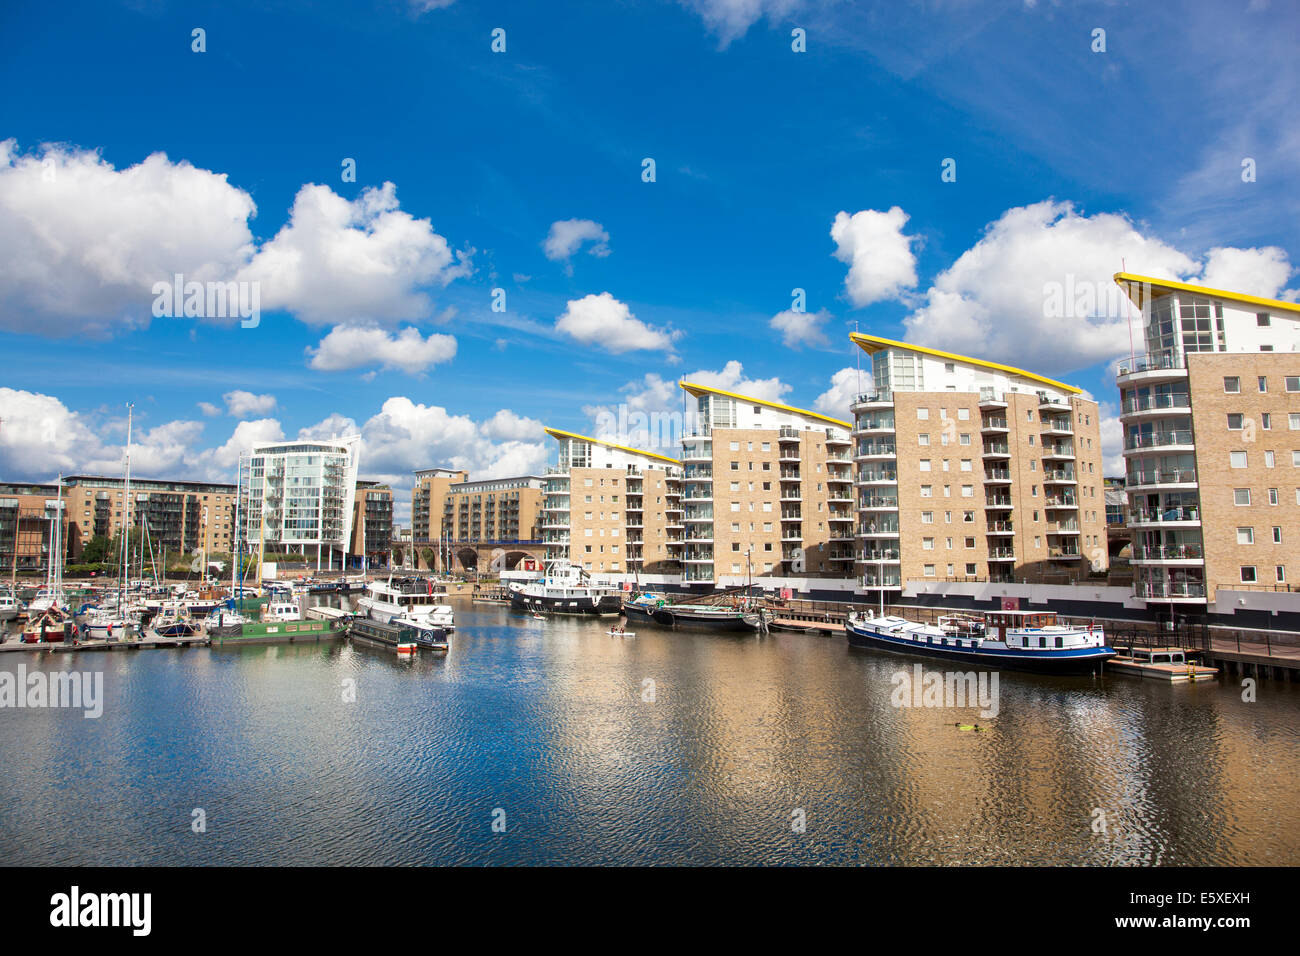 Boote, die im Limehouse Basin anlegen, umgeben von Wohnblocks, Berglen Court, Pinnacle I und Marina Heights, Tower Hamlets, London, Großbritannien Stockfoto